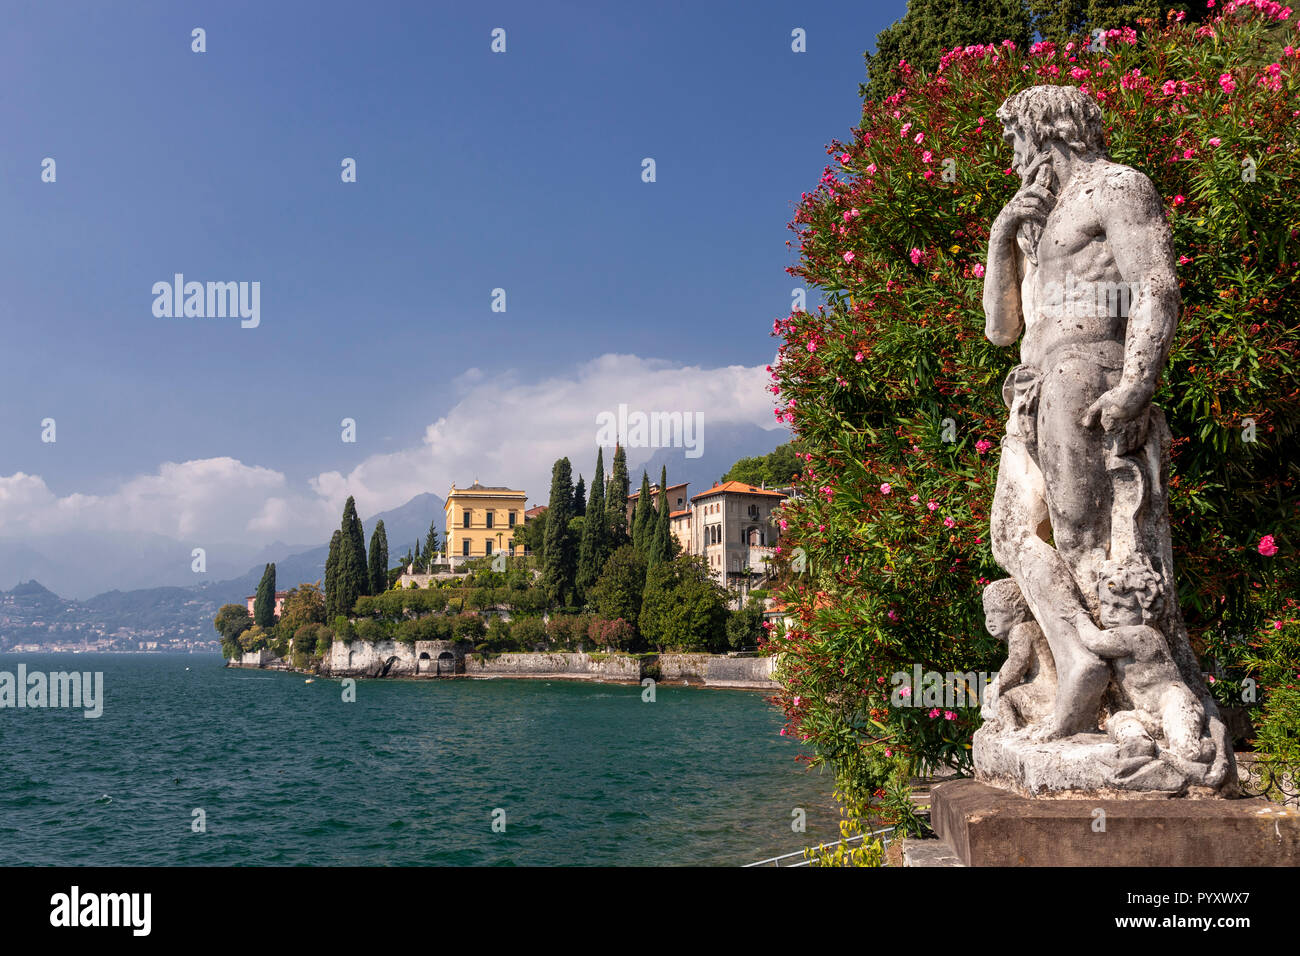 Statue dans les jardins de Villa Monastero à Varenna sur le lac de Côme, Italie Banque D'Images